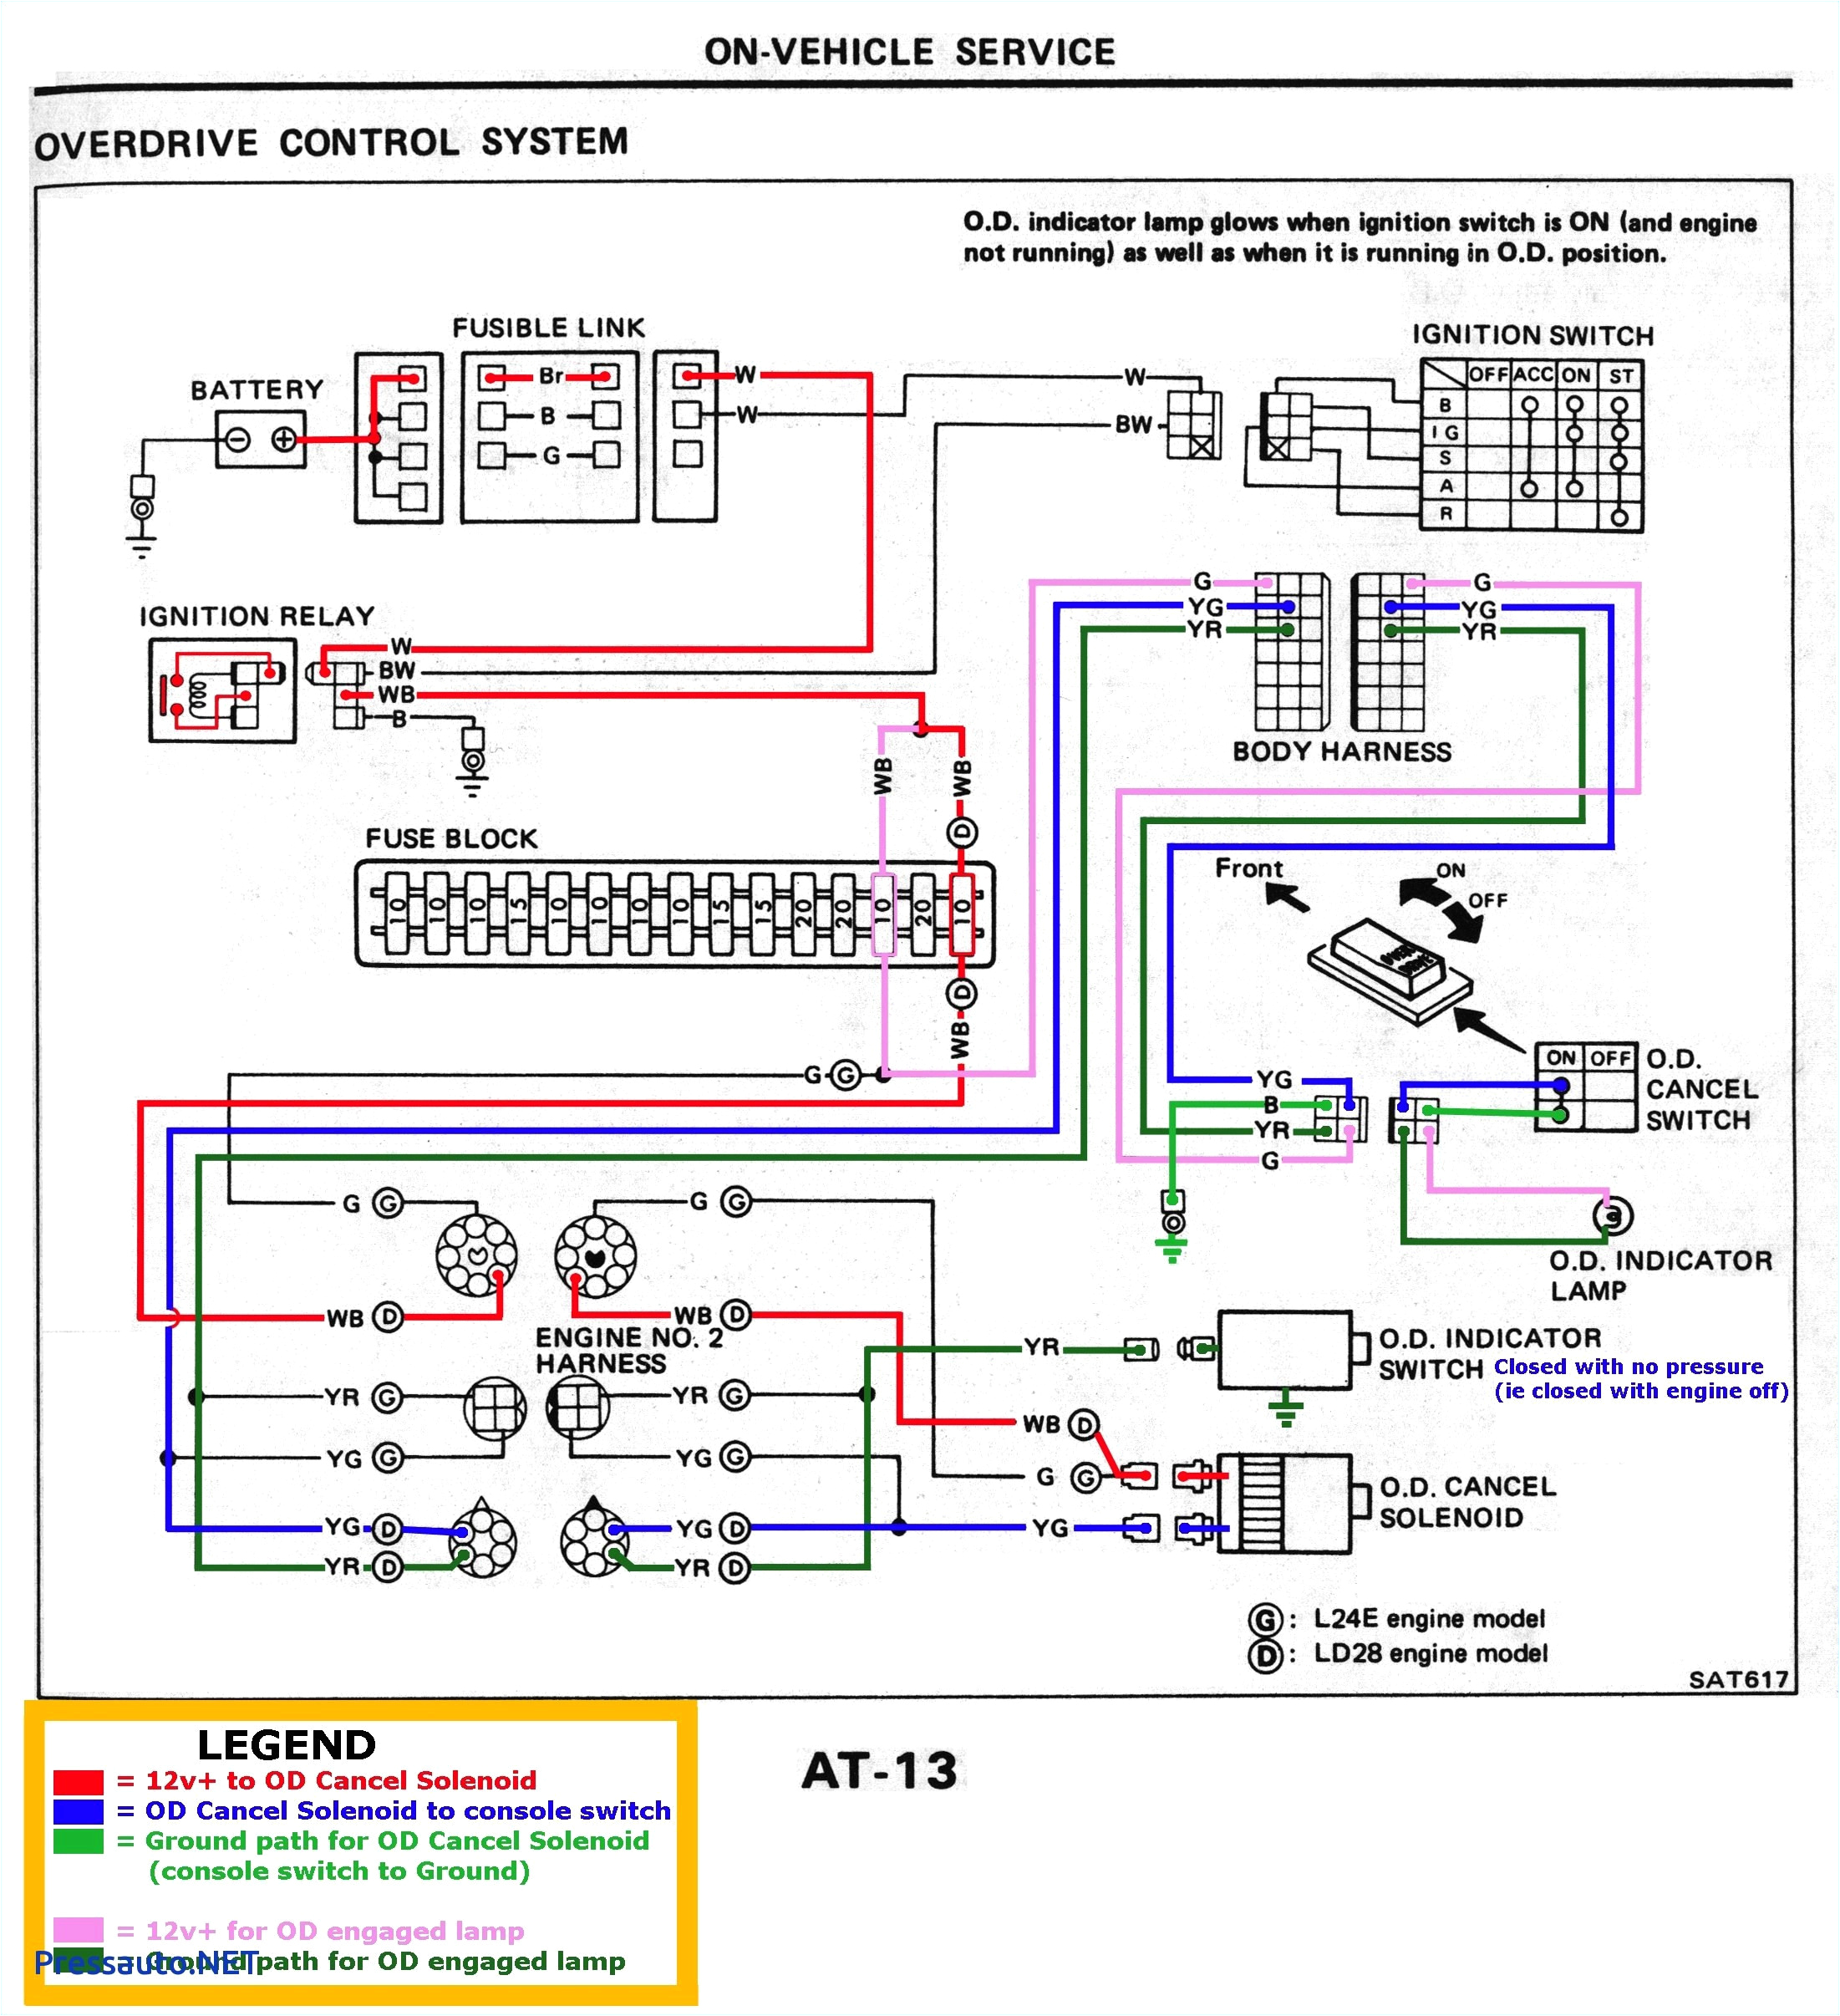 48 volt dc wiring diagram wiring diagram 48 volt dc wiring diagram